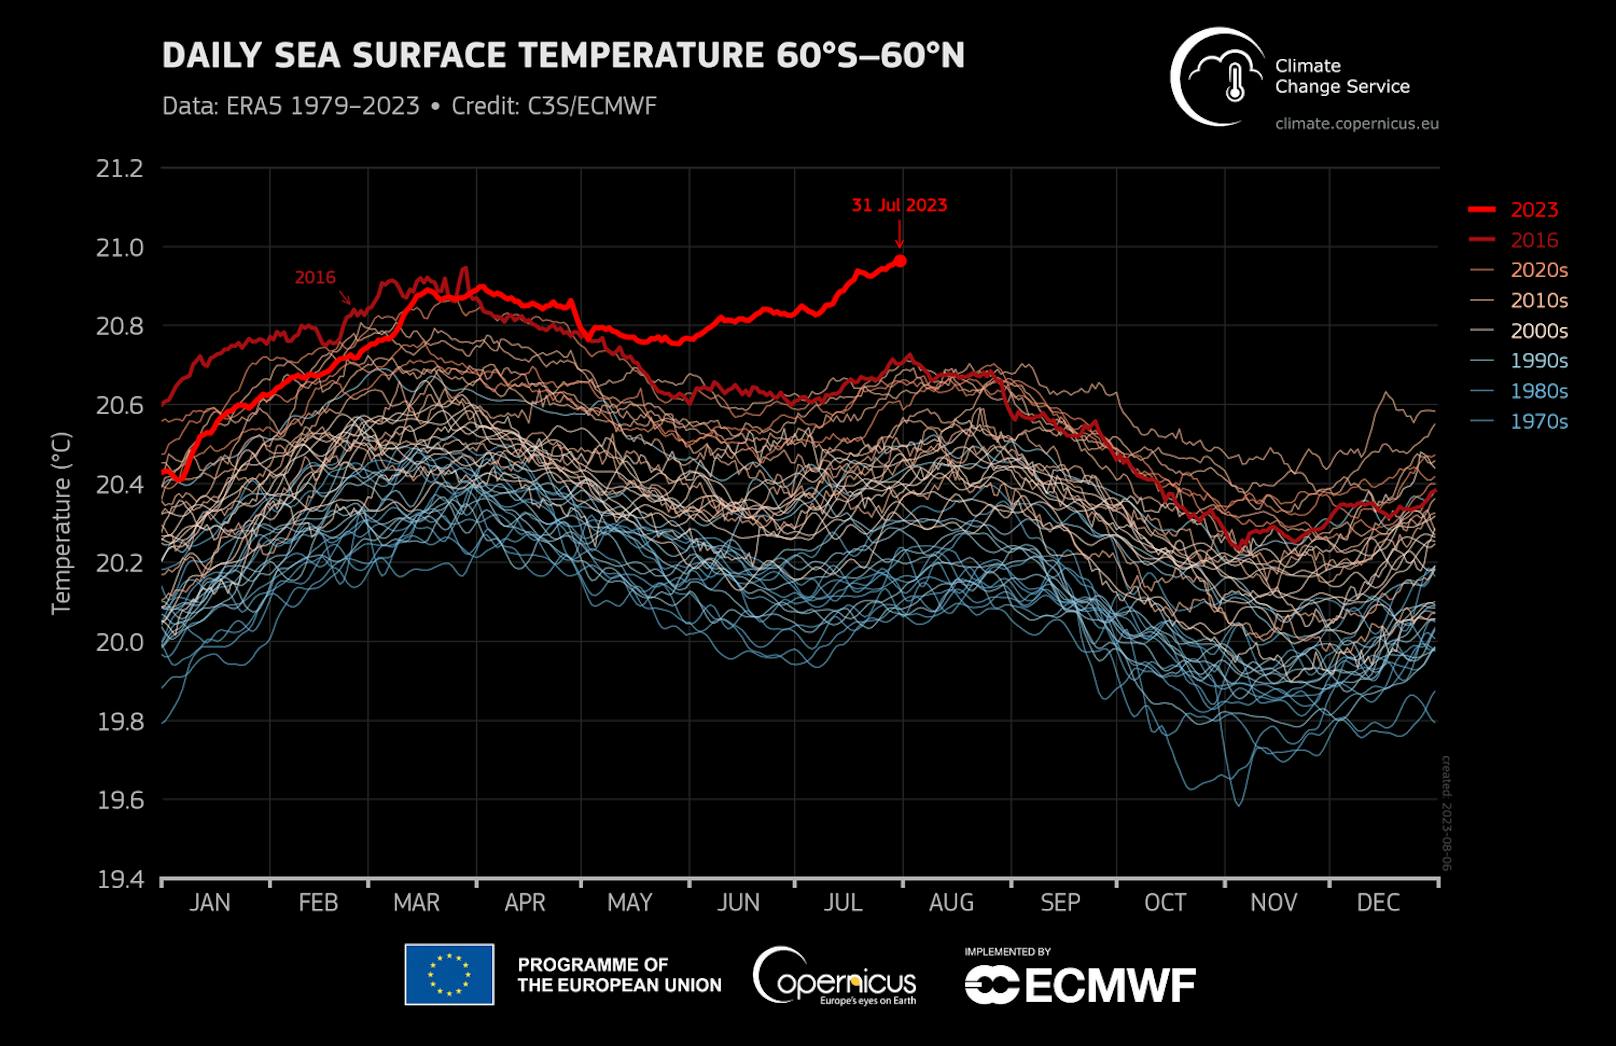 Auch die Meere waren seit mindestens dem Aufzeichnungsbeginn am 1.1.1979 noch nie so heiß. Im Bild die tägliche Temperatur, jede Linie ist ein Jahr. Farbgebung je nach Dekade.